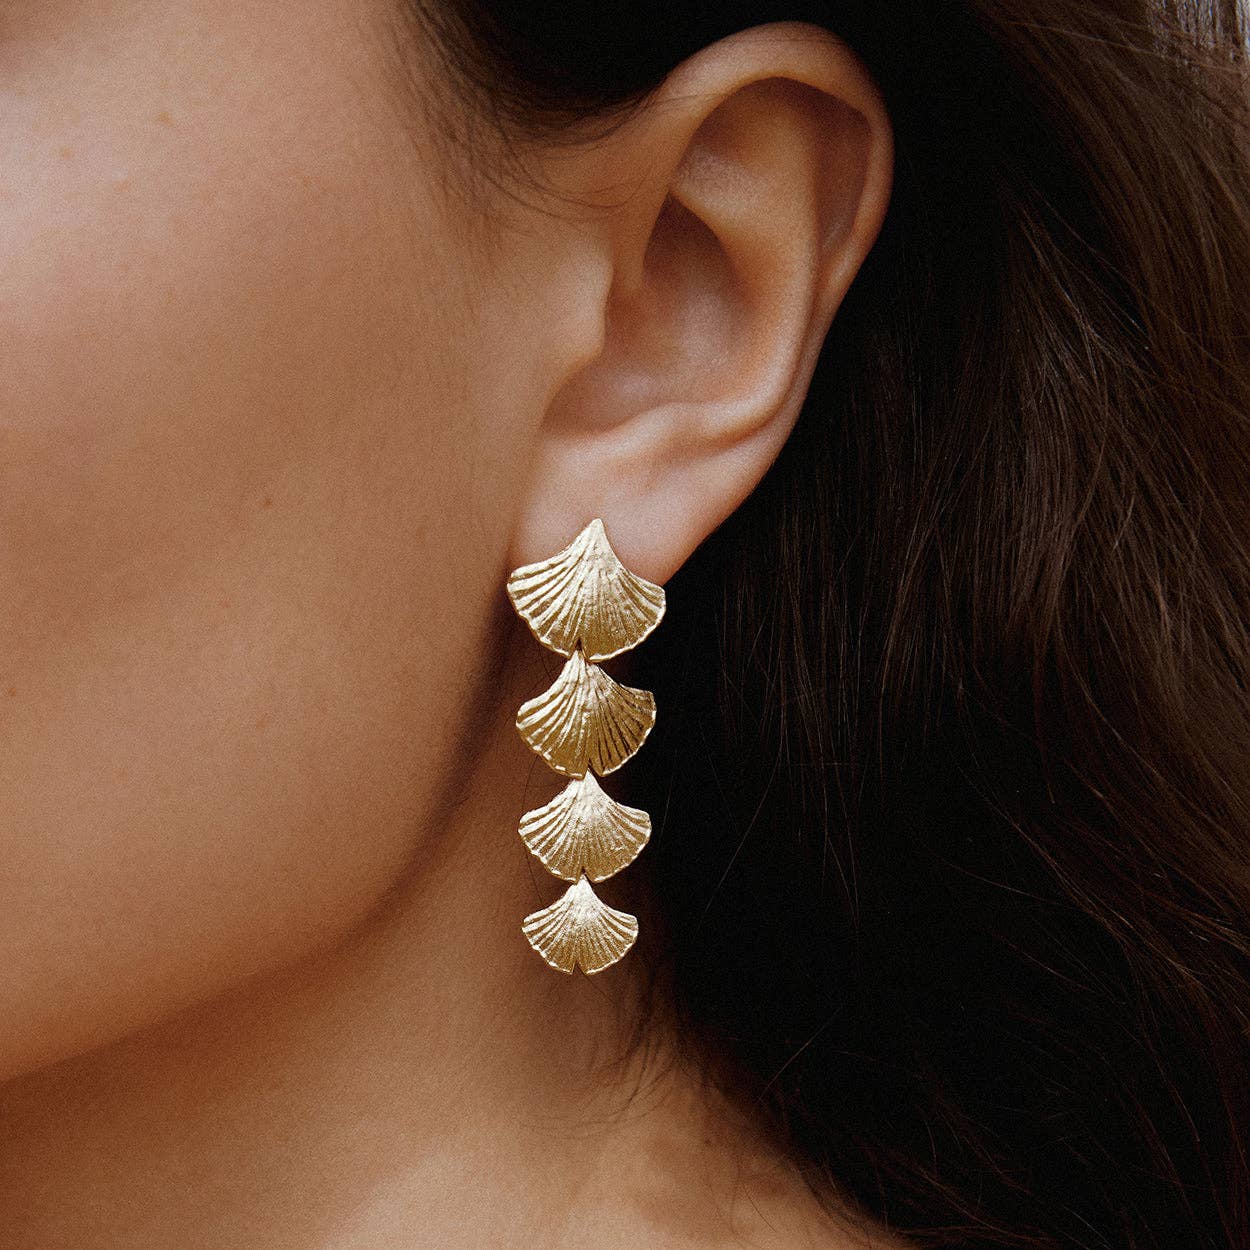 Biloba Earrings | Jewelry Gold Gift Waterproof - Shop Wild Ivy